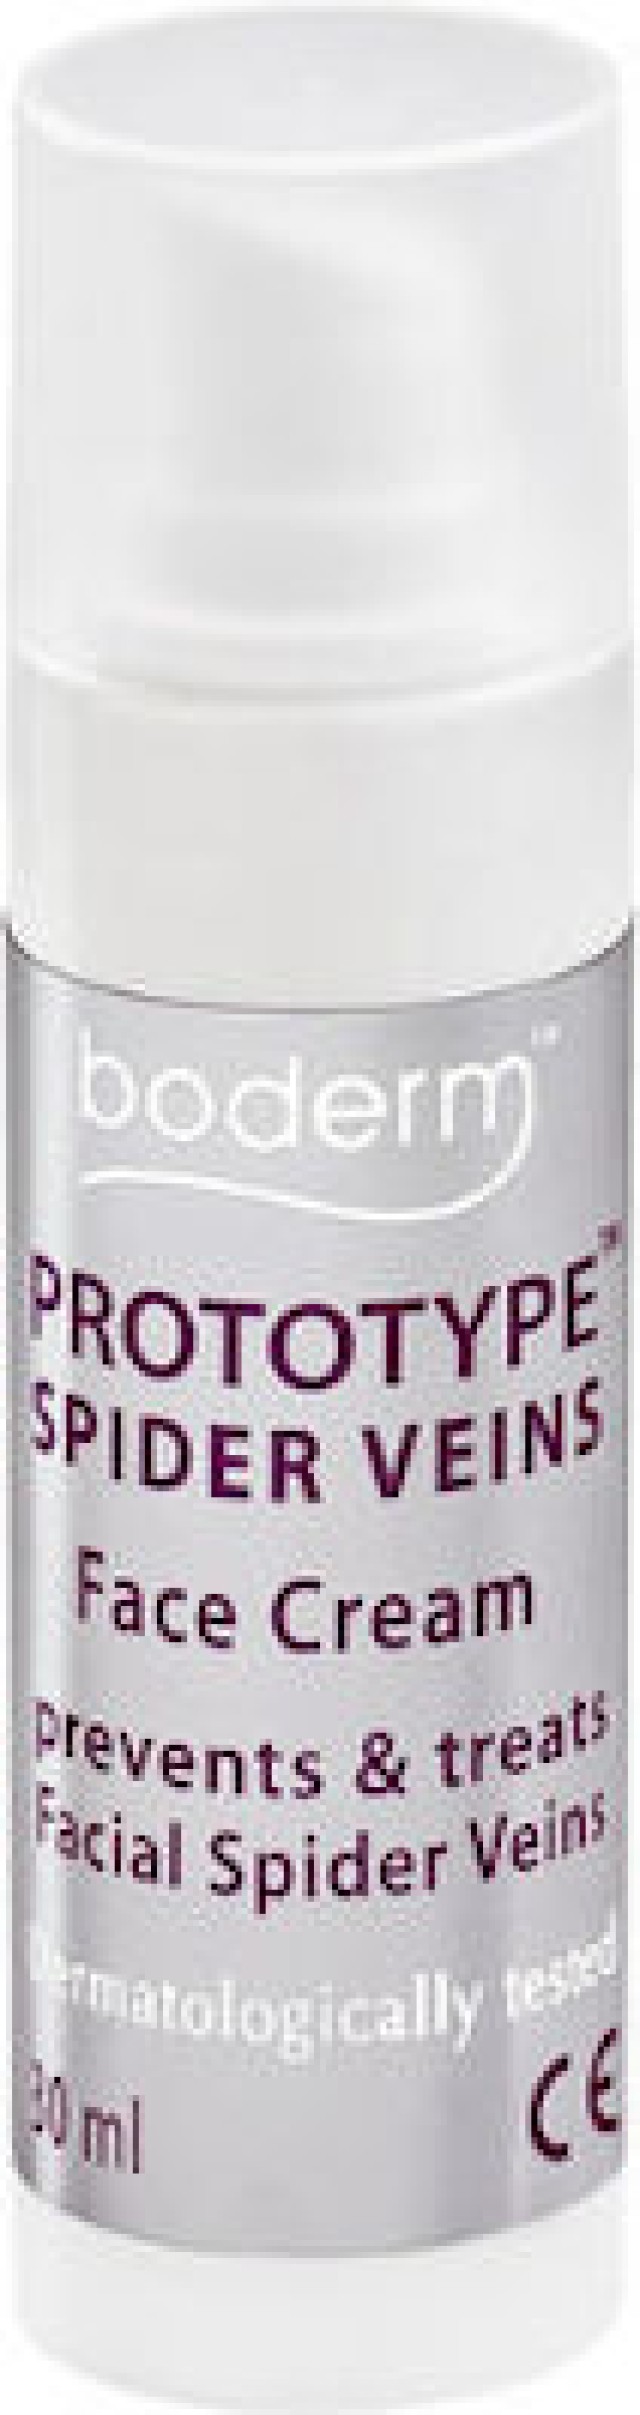 Boderm Prototype Spider Veins Face Cream Κρέμα Προσώπου για την Αντιμετώπιση των Ευρυαγγειών, 30ml